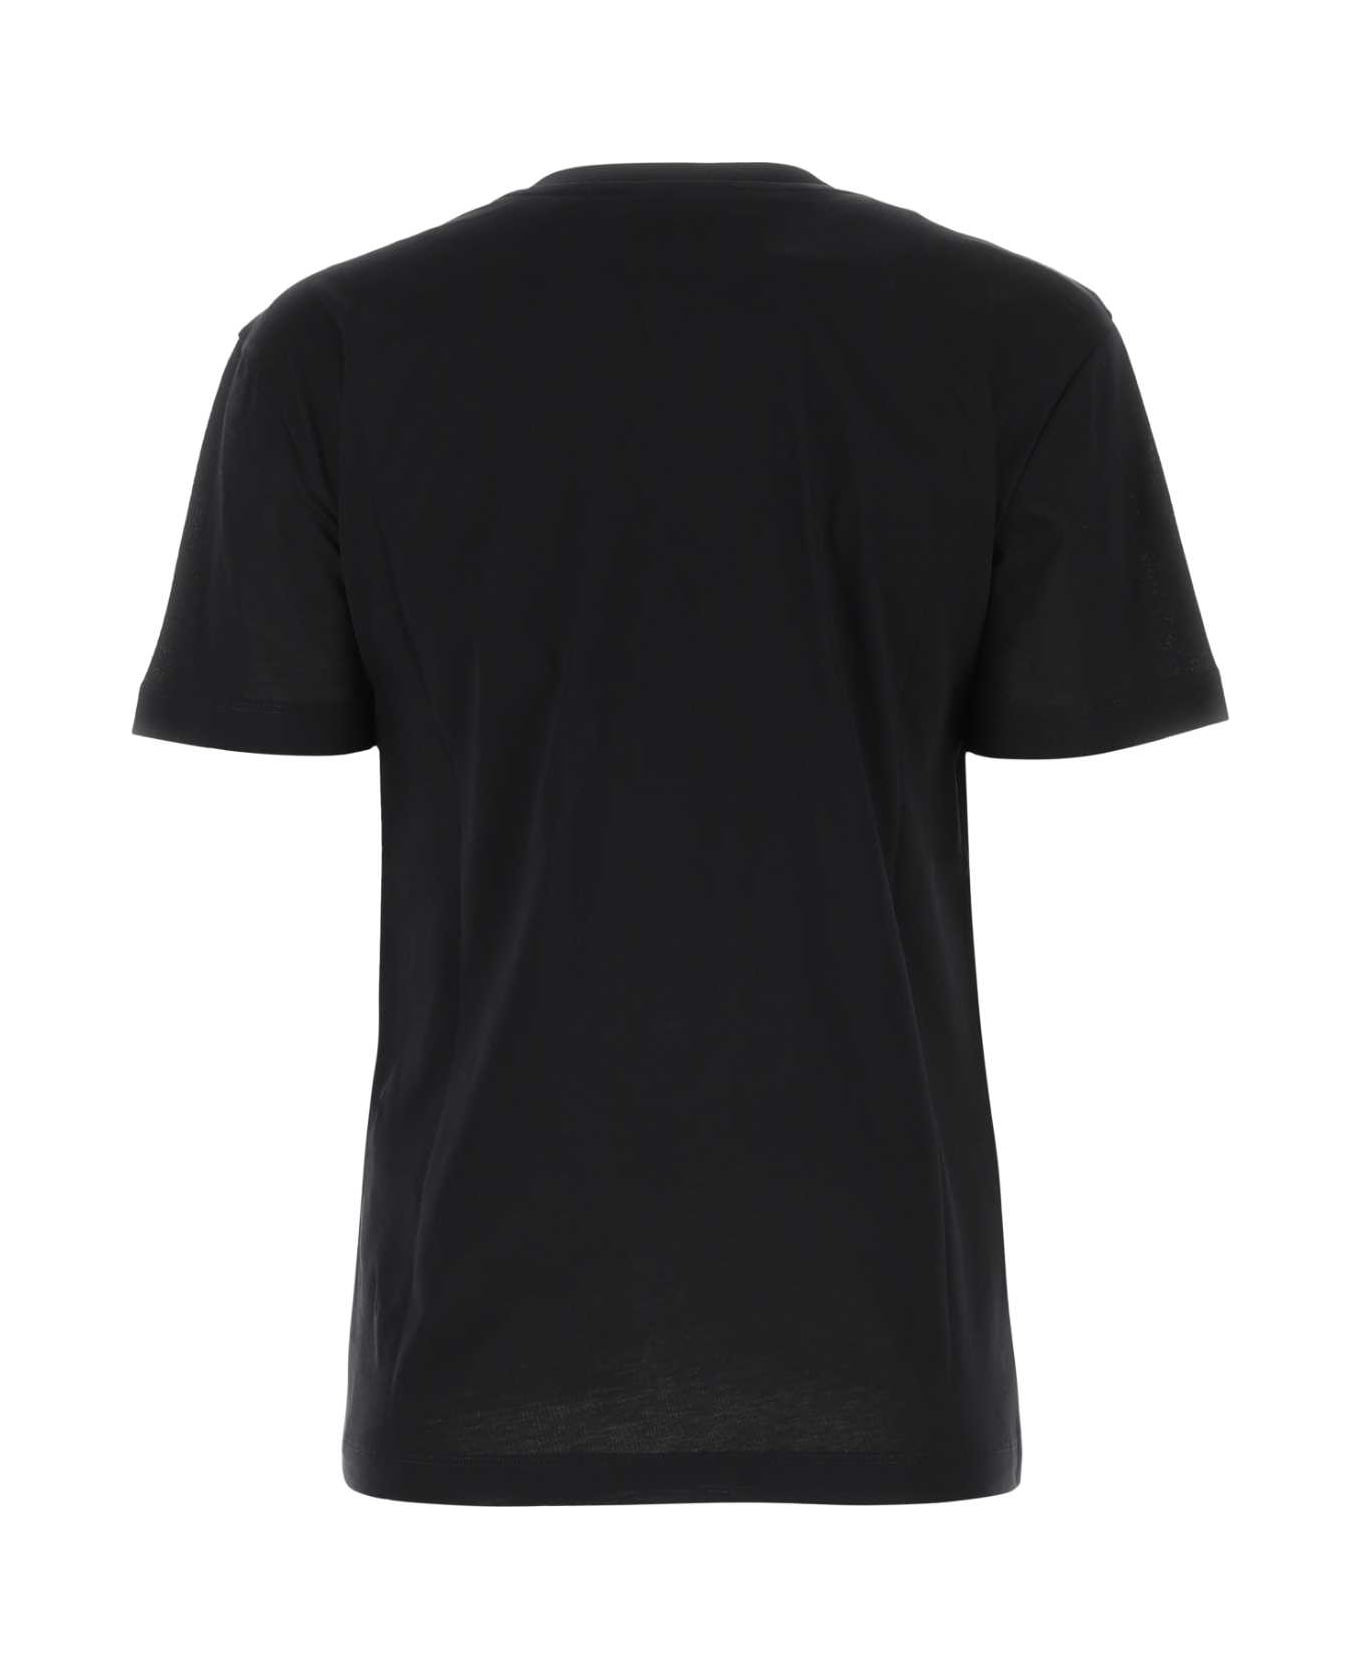 Patou Black Cotton T-shirt - 999B